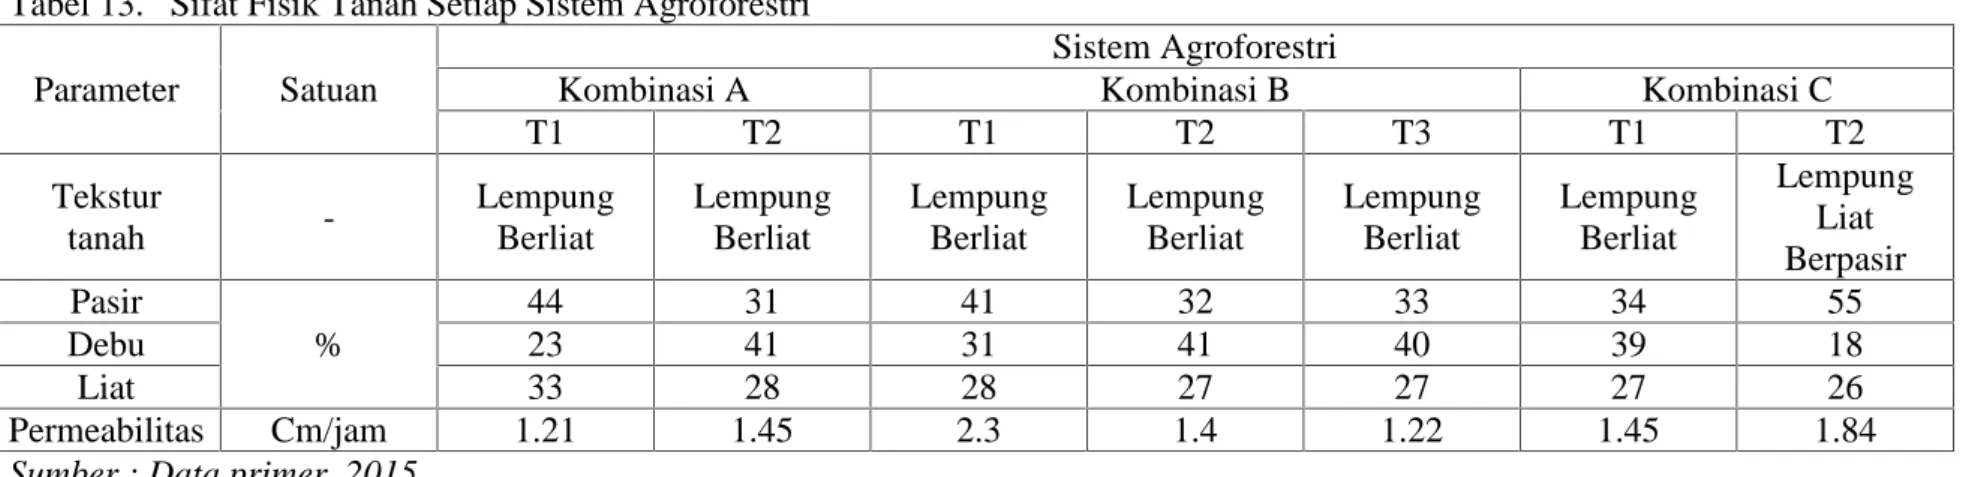 Tabel 13. Sifat Fisik Tanah Setiap Sistem Agroforestri Parameter Satuan